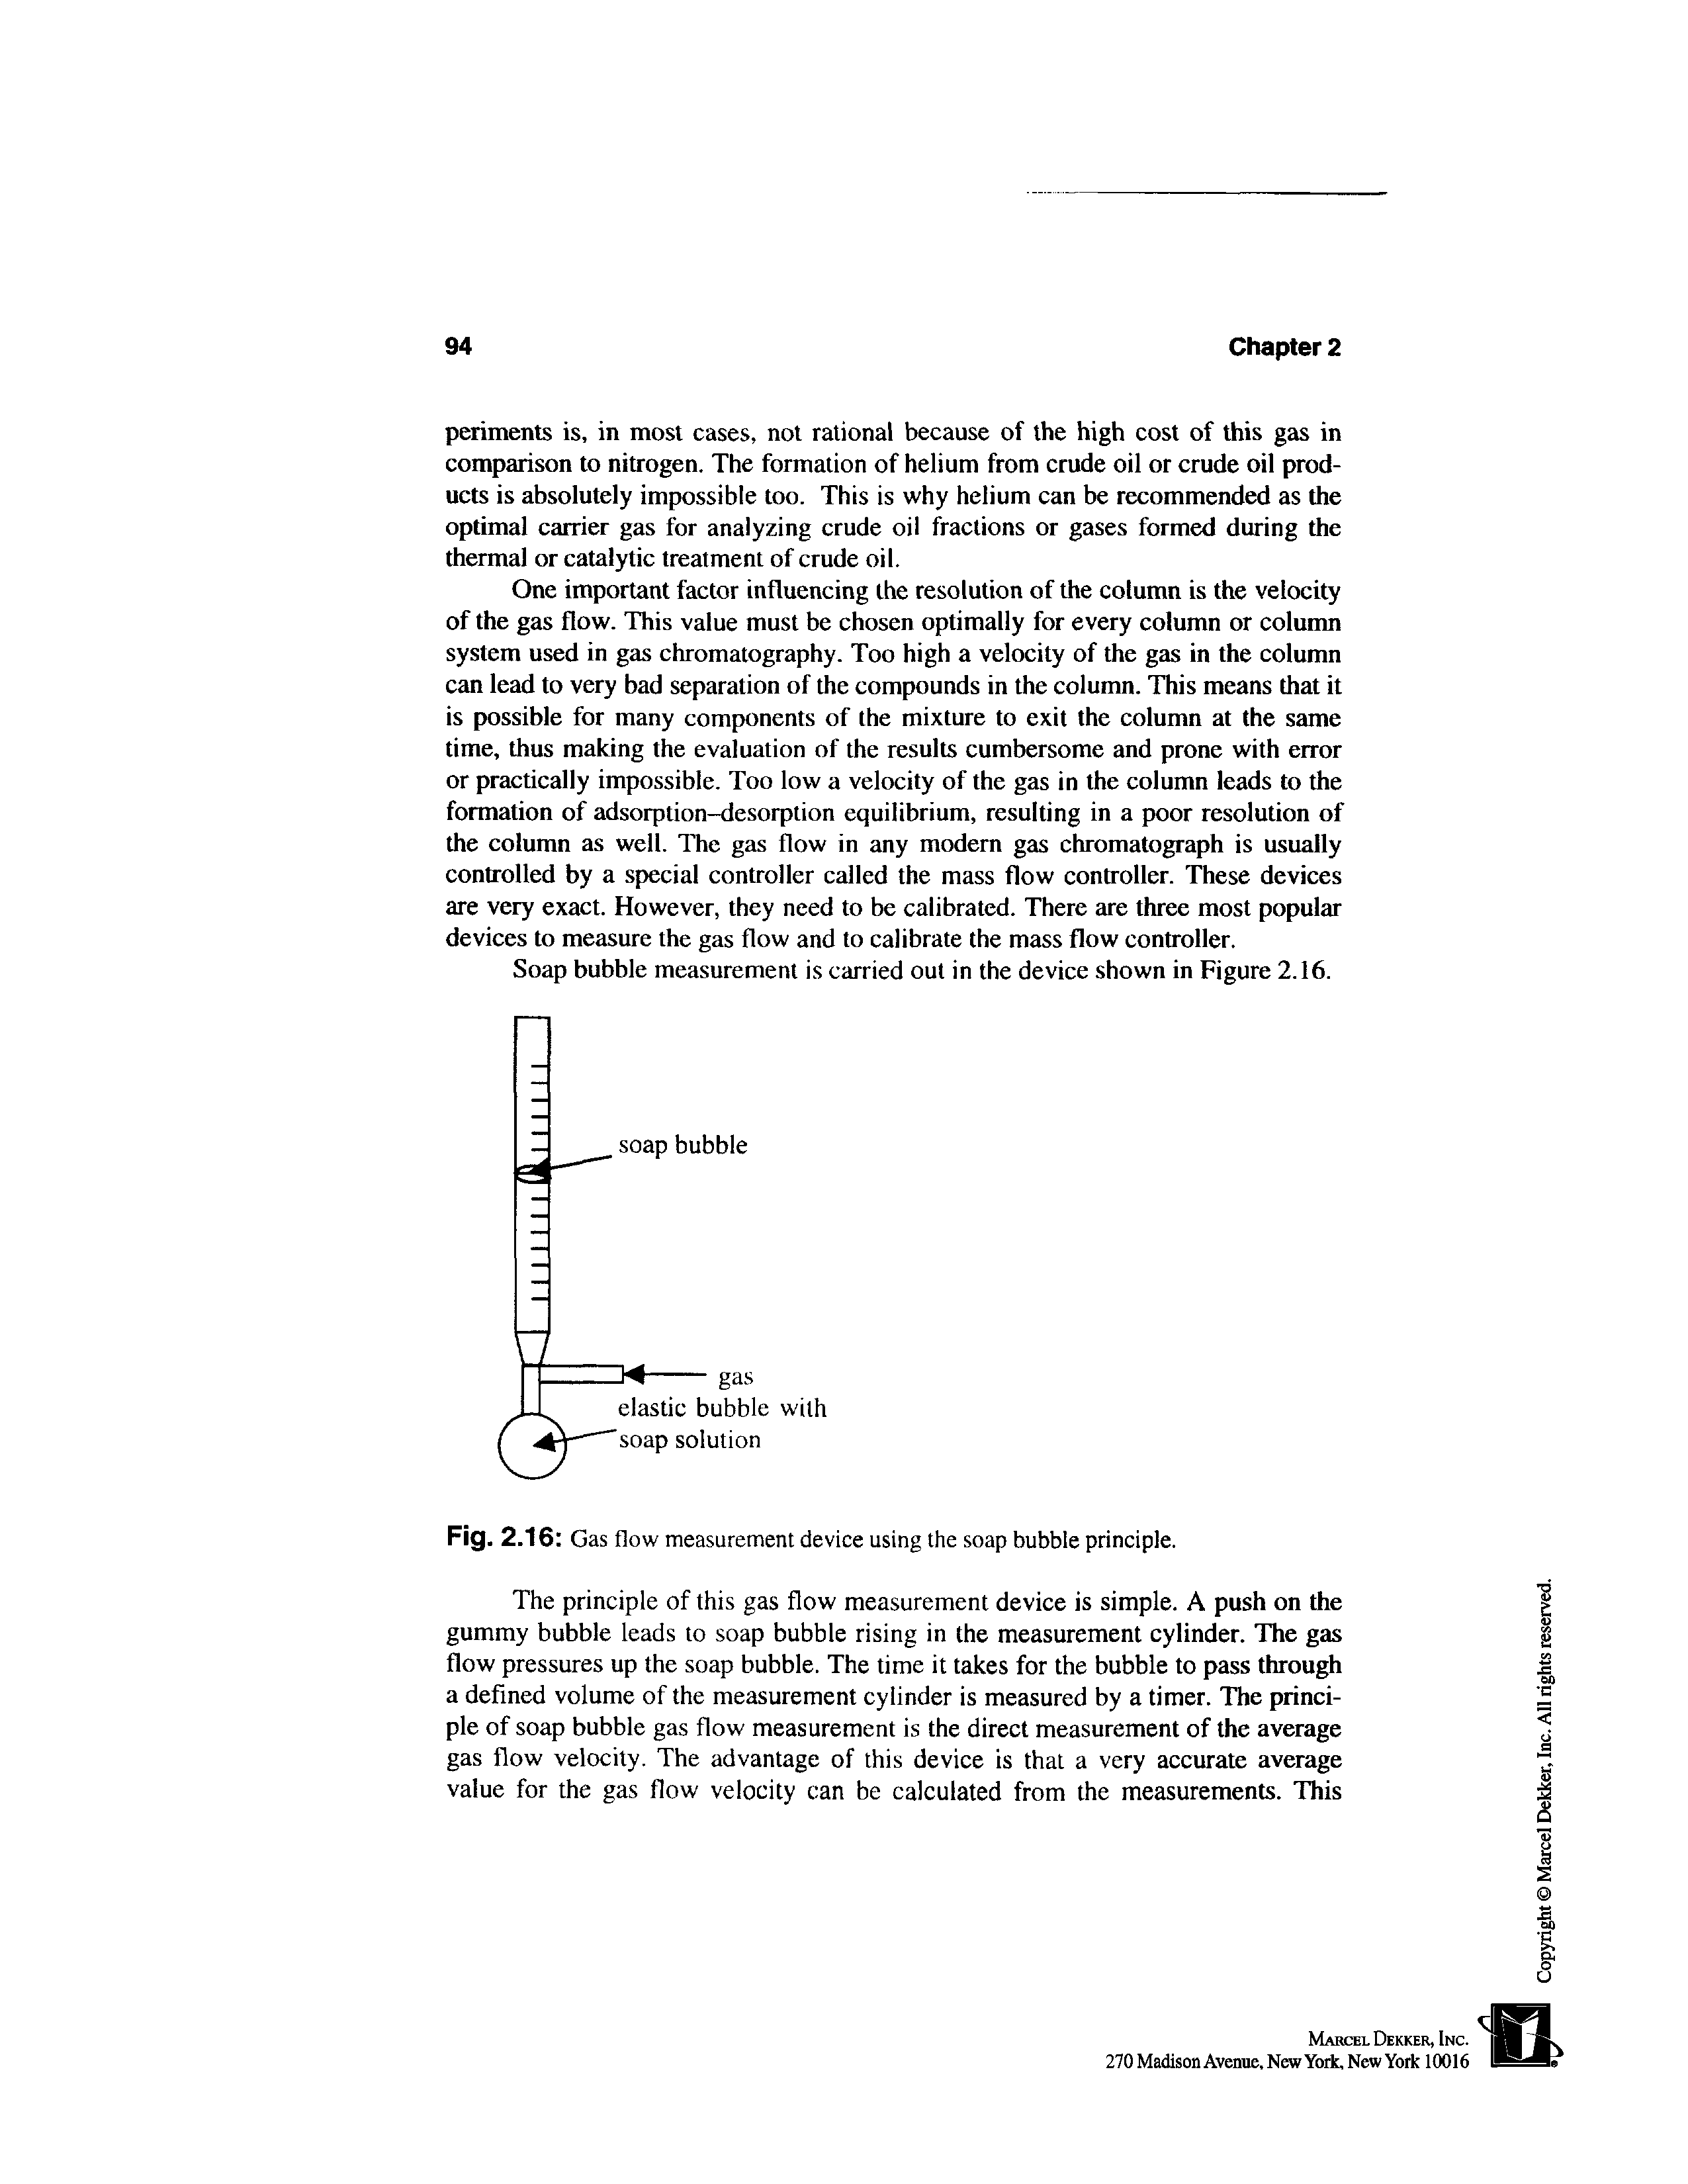 Fig. 2.16 Gas flow measurement device using the soap bubble principle.